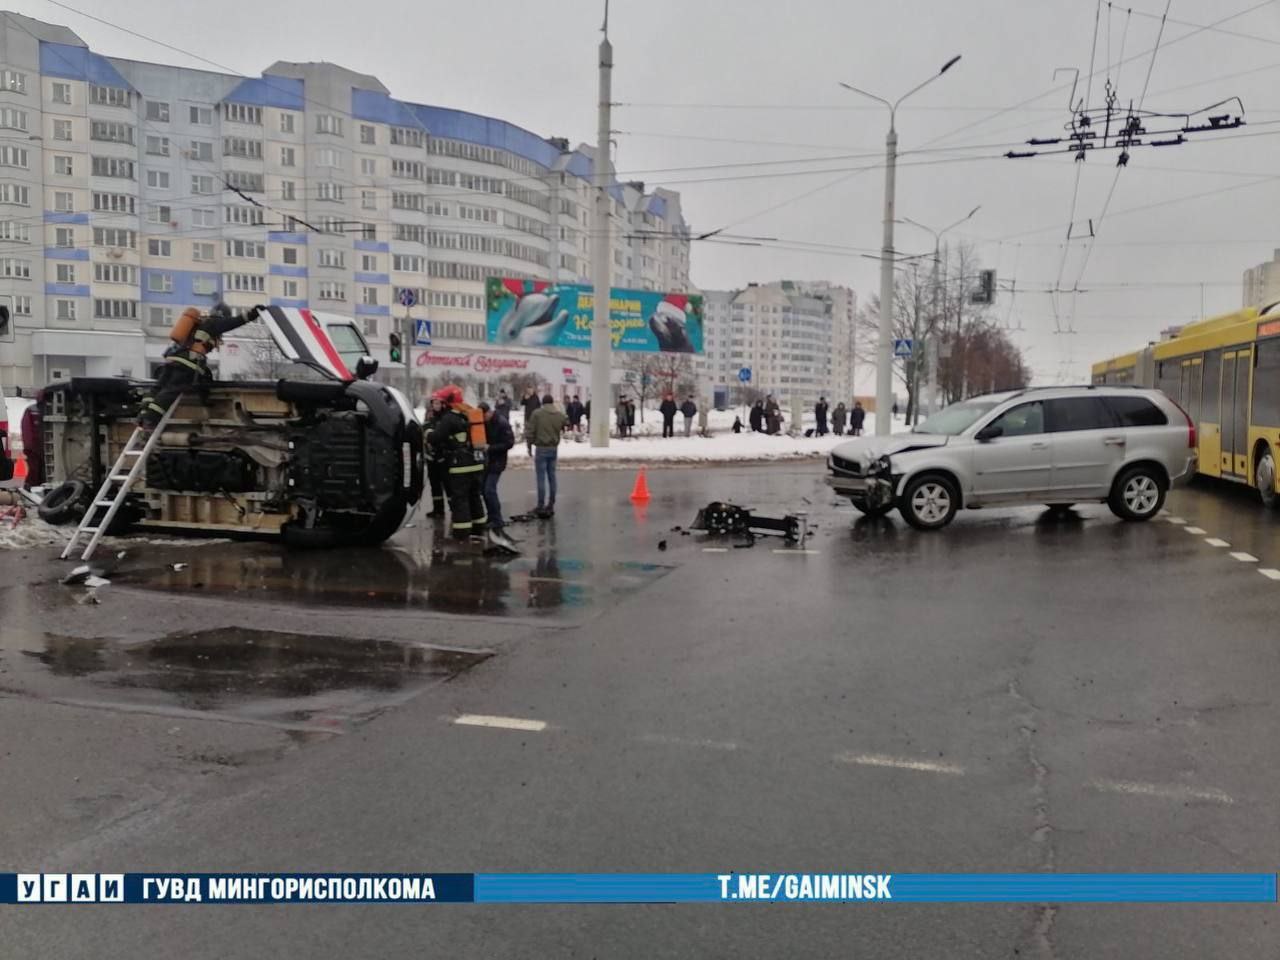 Скорая помощь опрокинулась после ДТП в Минске